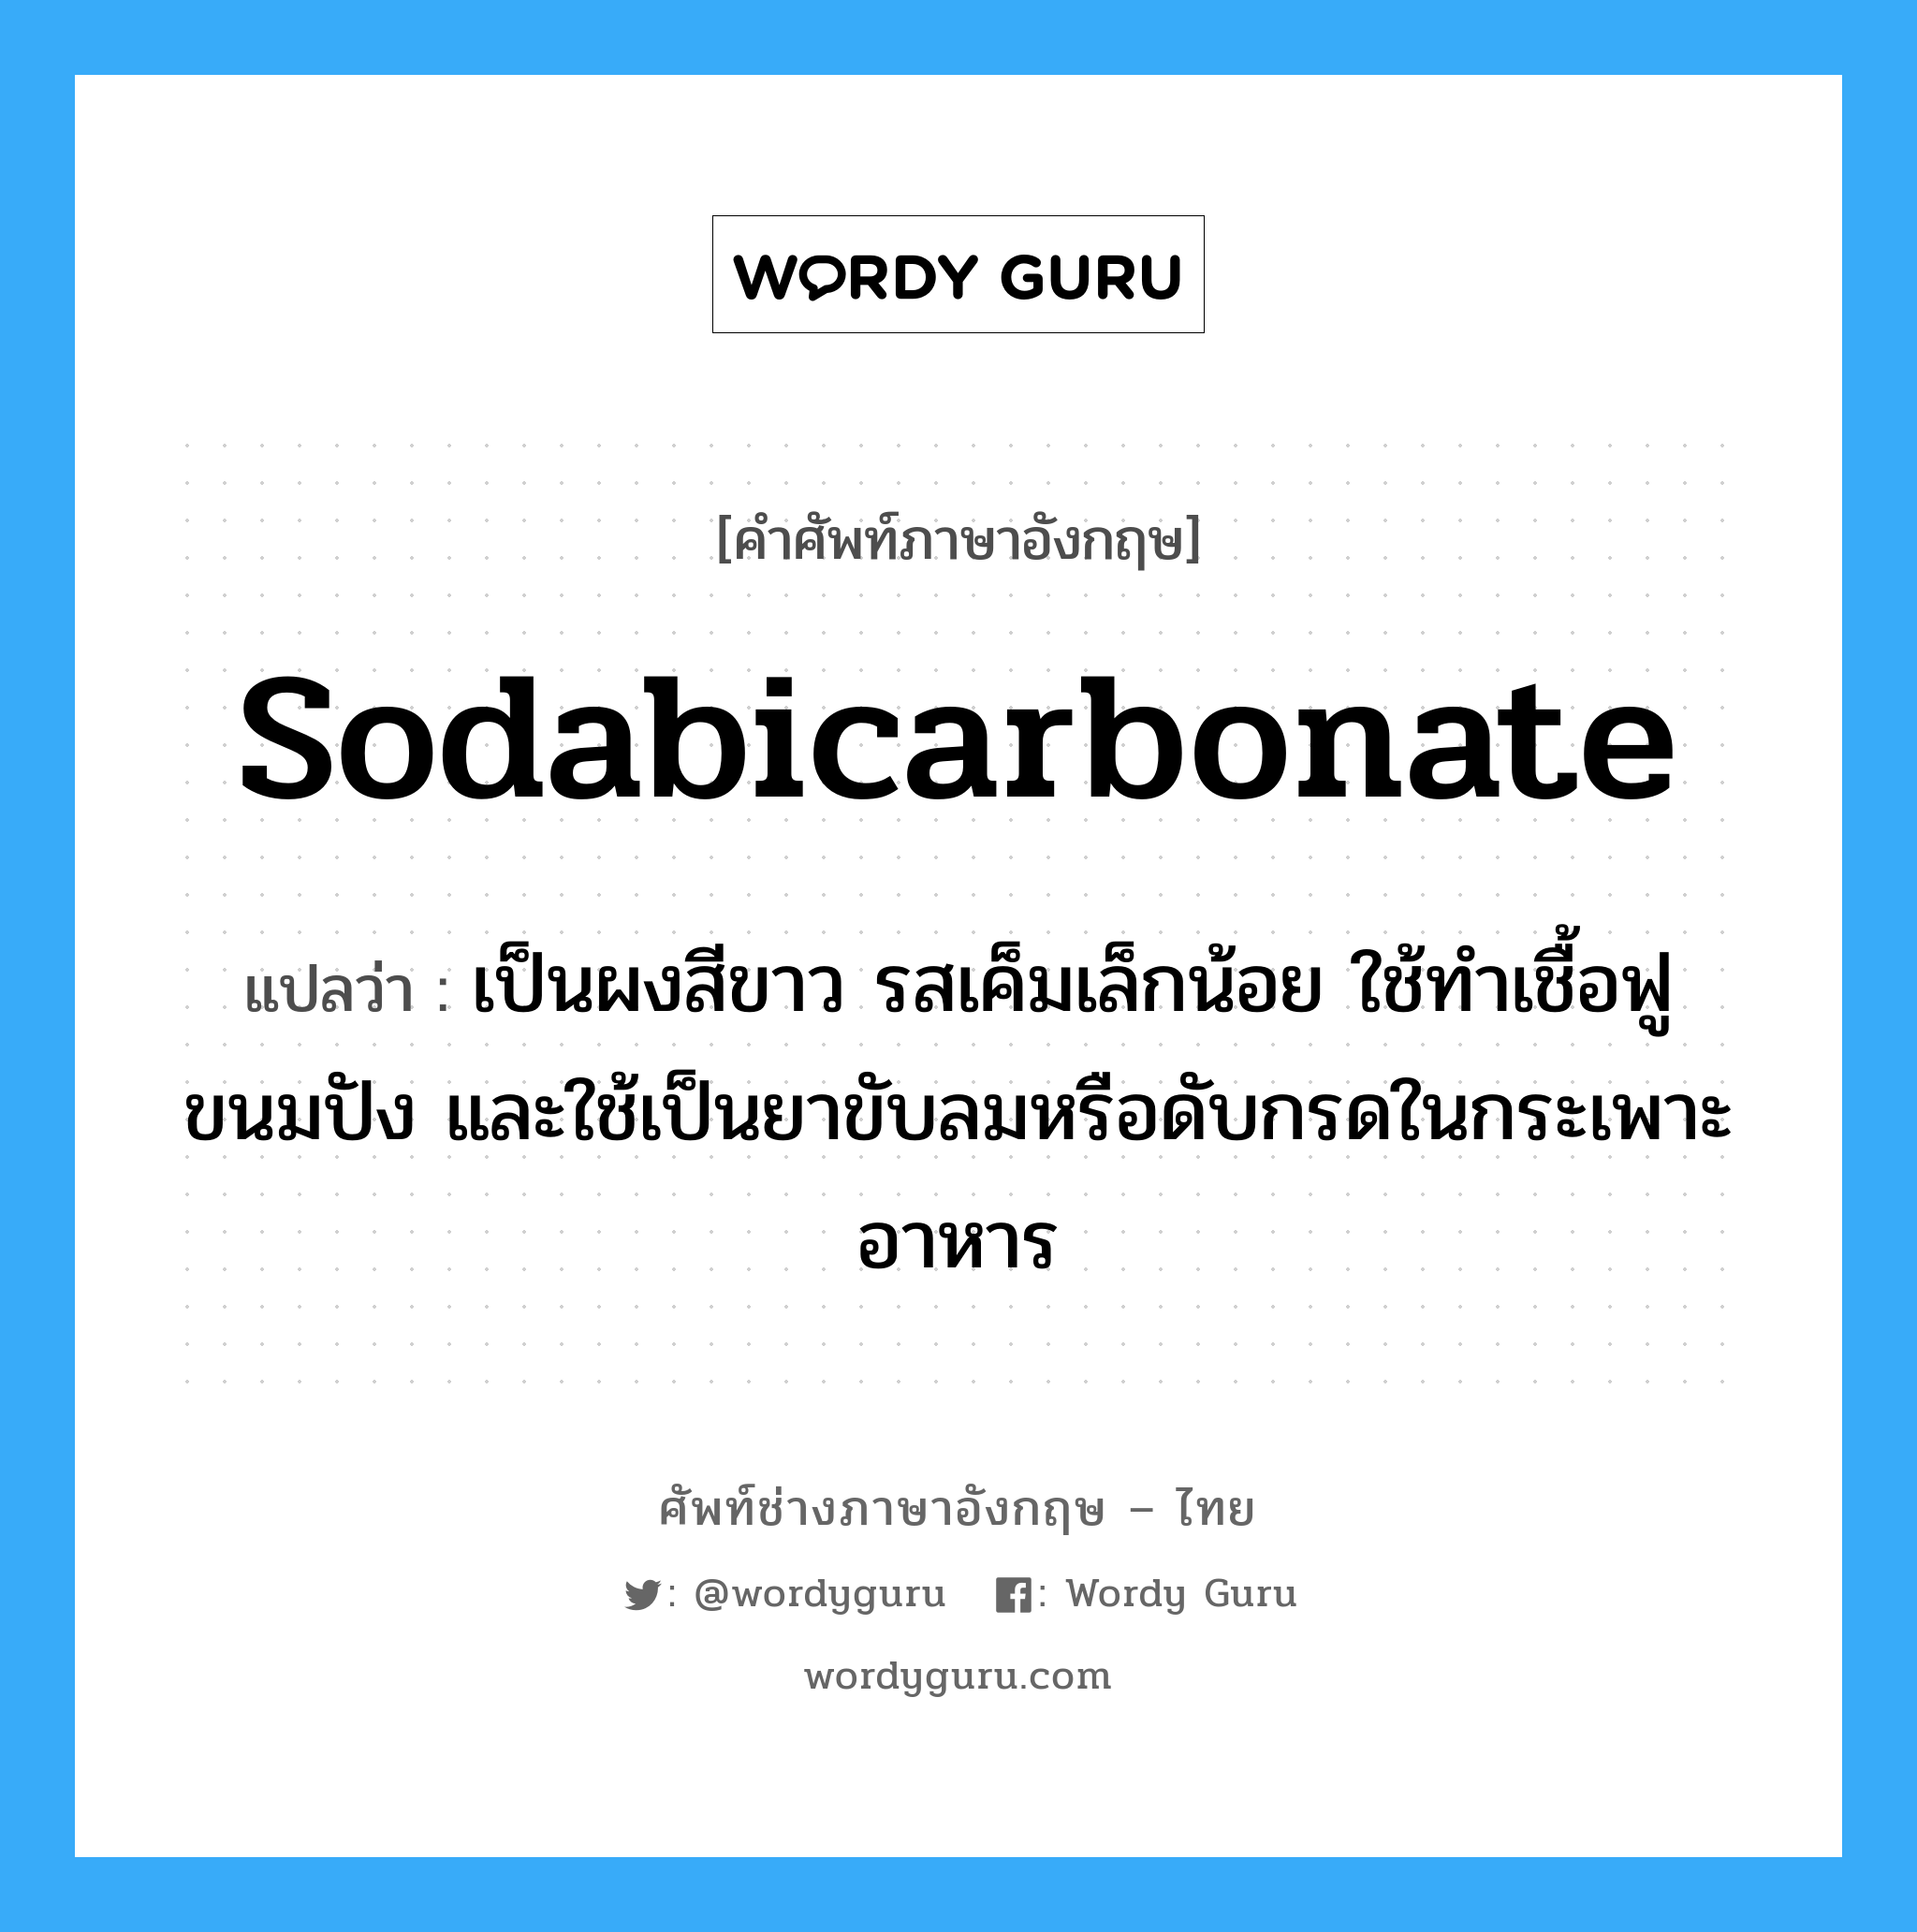 sodabicarbonate แปลว่า?, คำศัพท์ช่างภาษาอังกฤษ - ไทย sodabicarbonate คำศัพท์ภาษาอังกฤษ sodabicarbonate แปลว่า เป็นผงสีขาว รสเค็มเล็กน้อย ใช้ทำเชื้อฟูขนมปัง และใช้เป็นยาขับลมหรือดับกรดในกระเพาะอาหาร